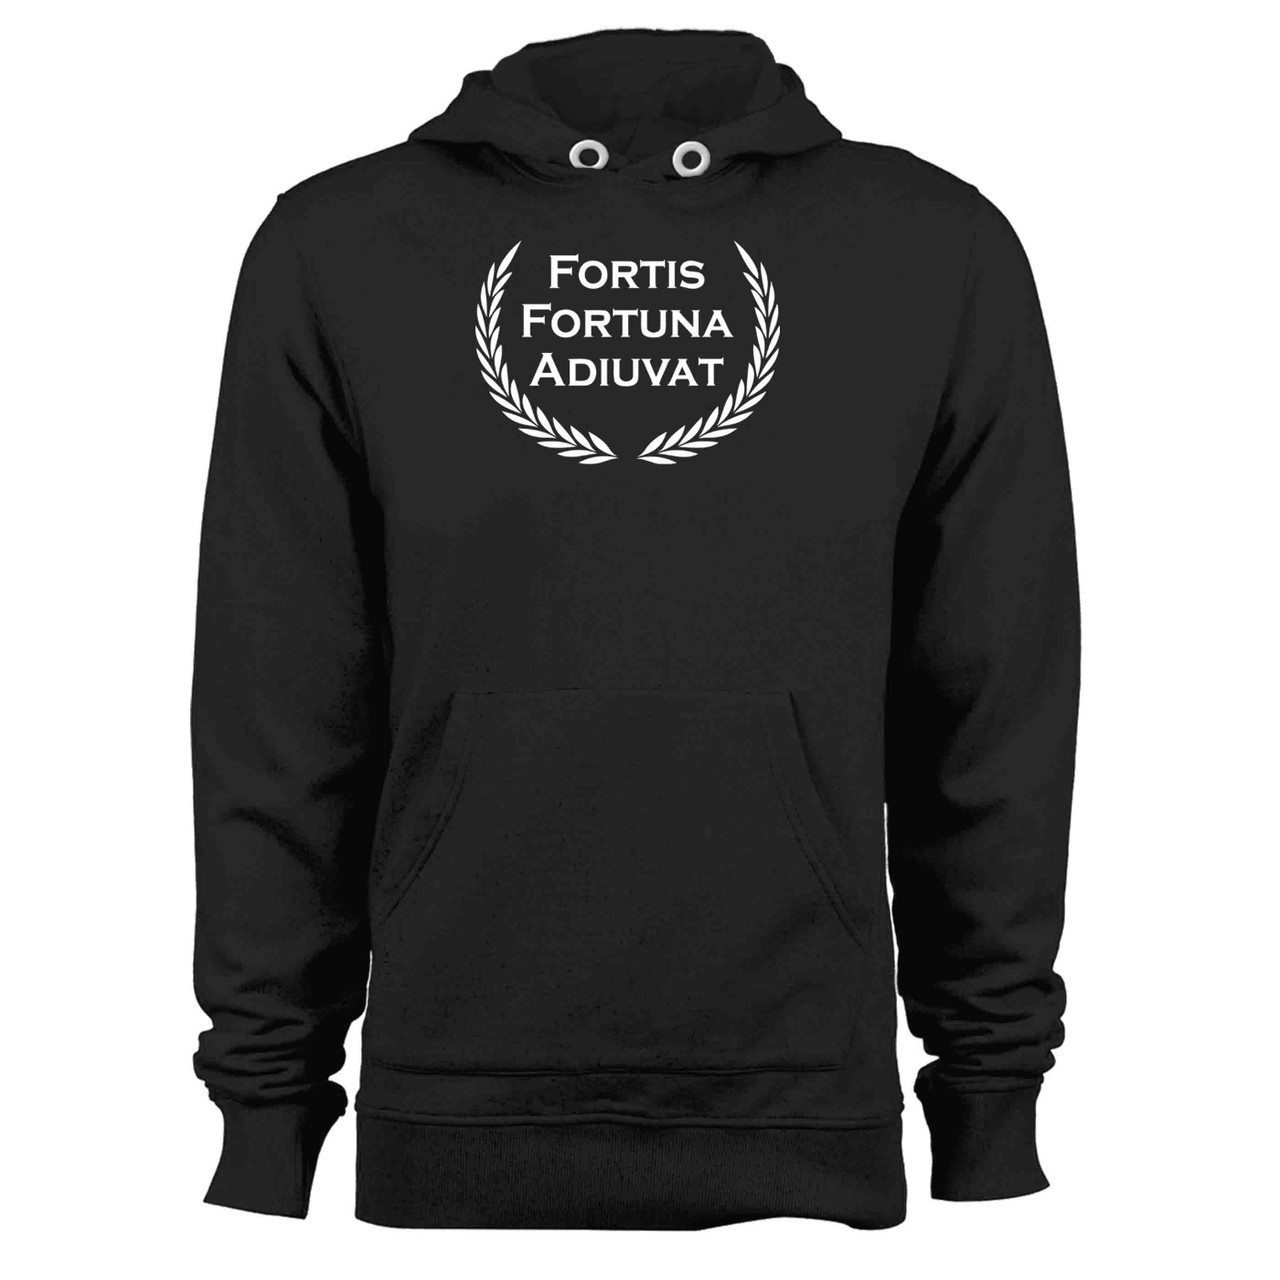 Fortis Fortuna Adiuvat - Latin Women's Hoodie